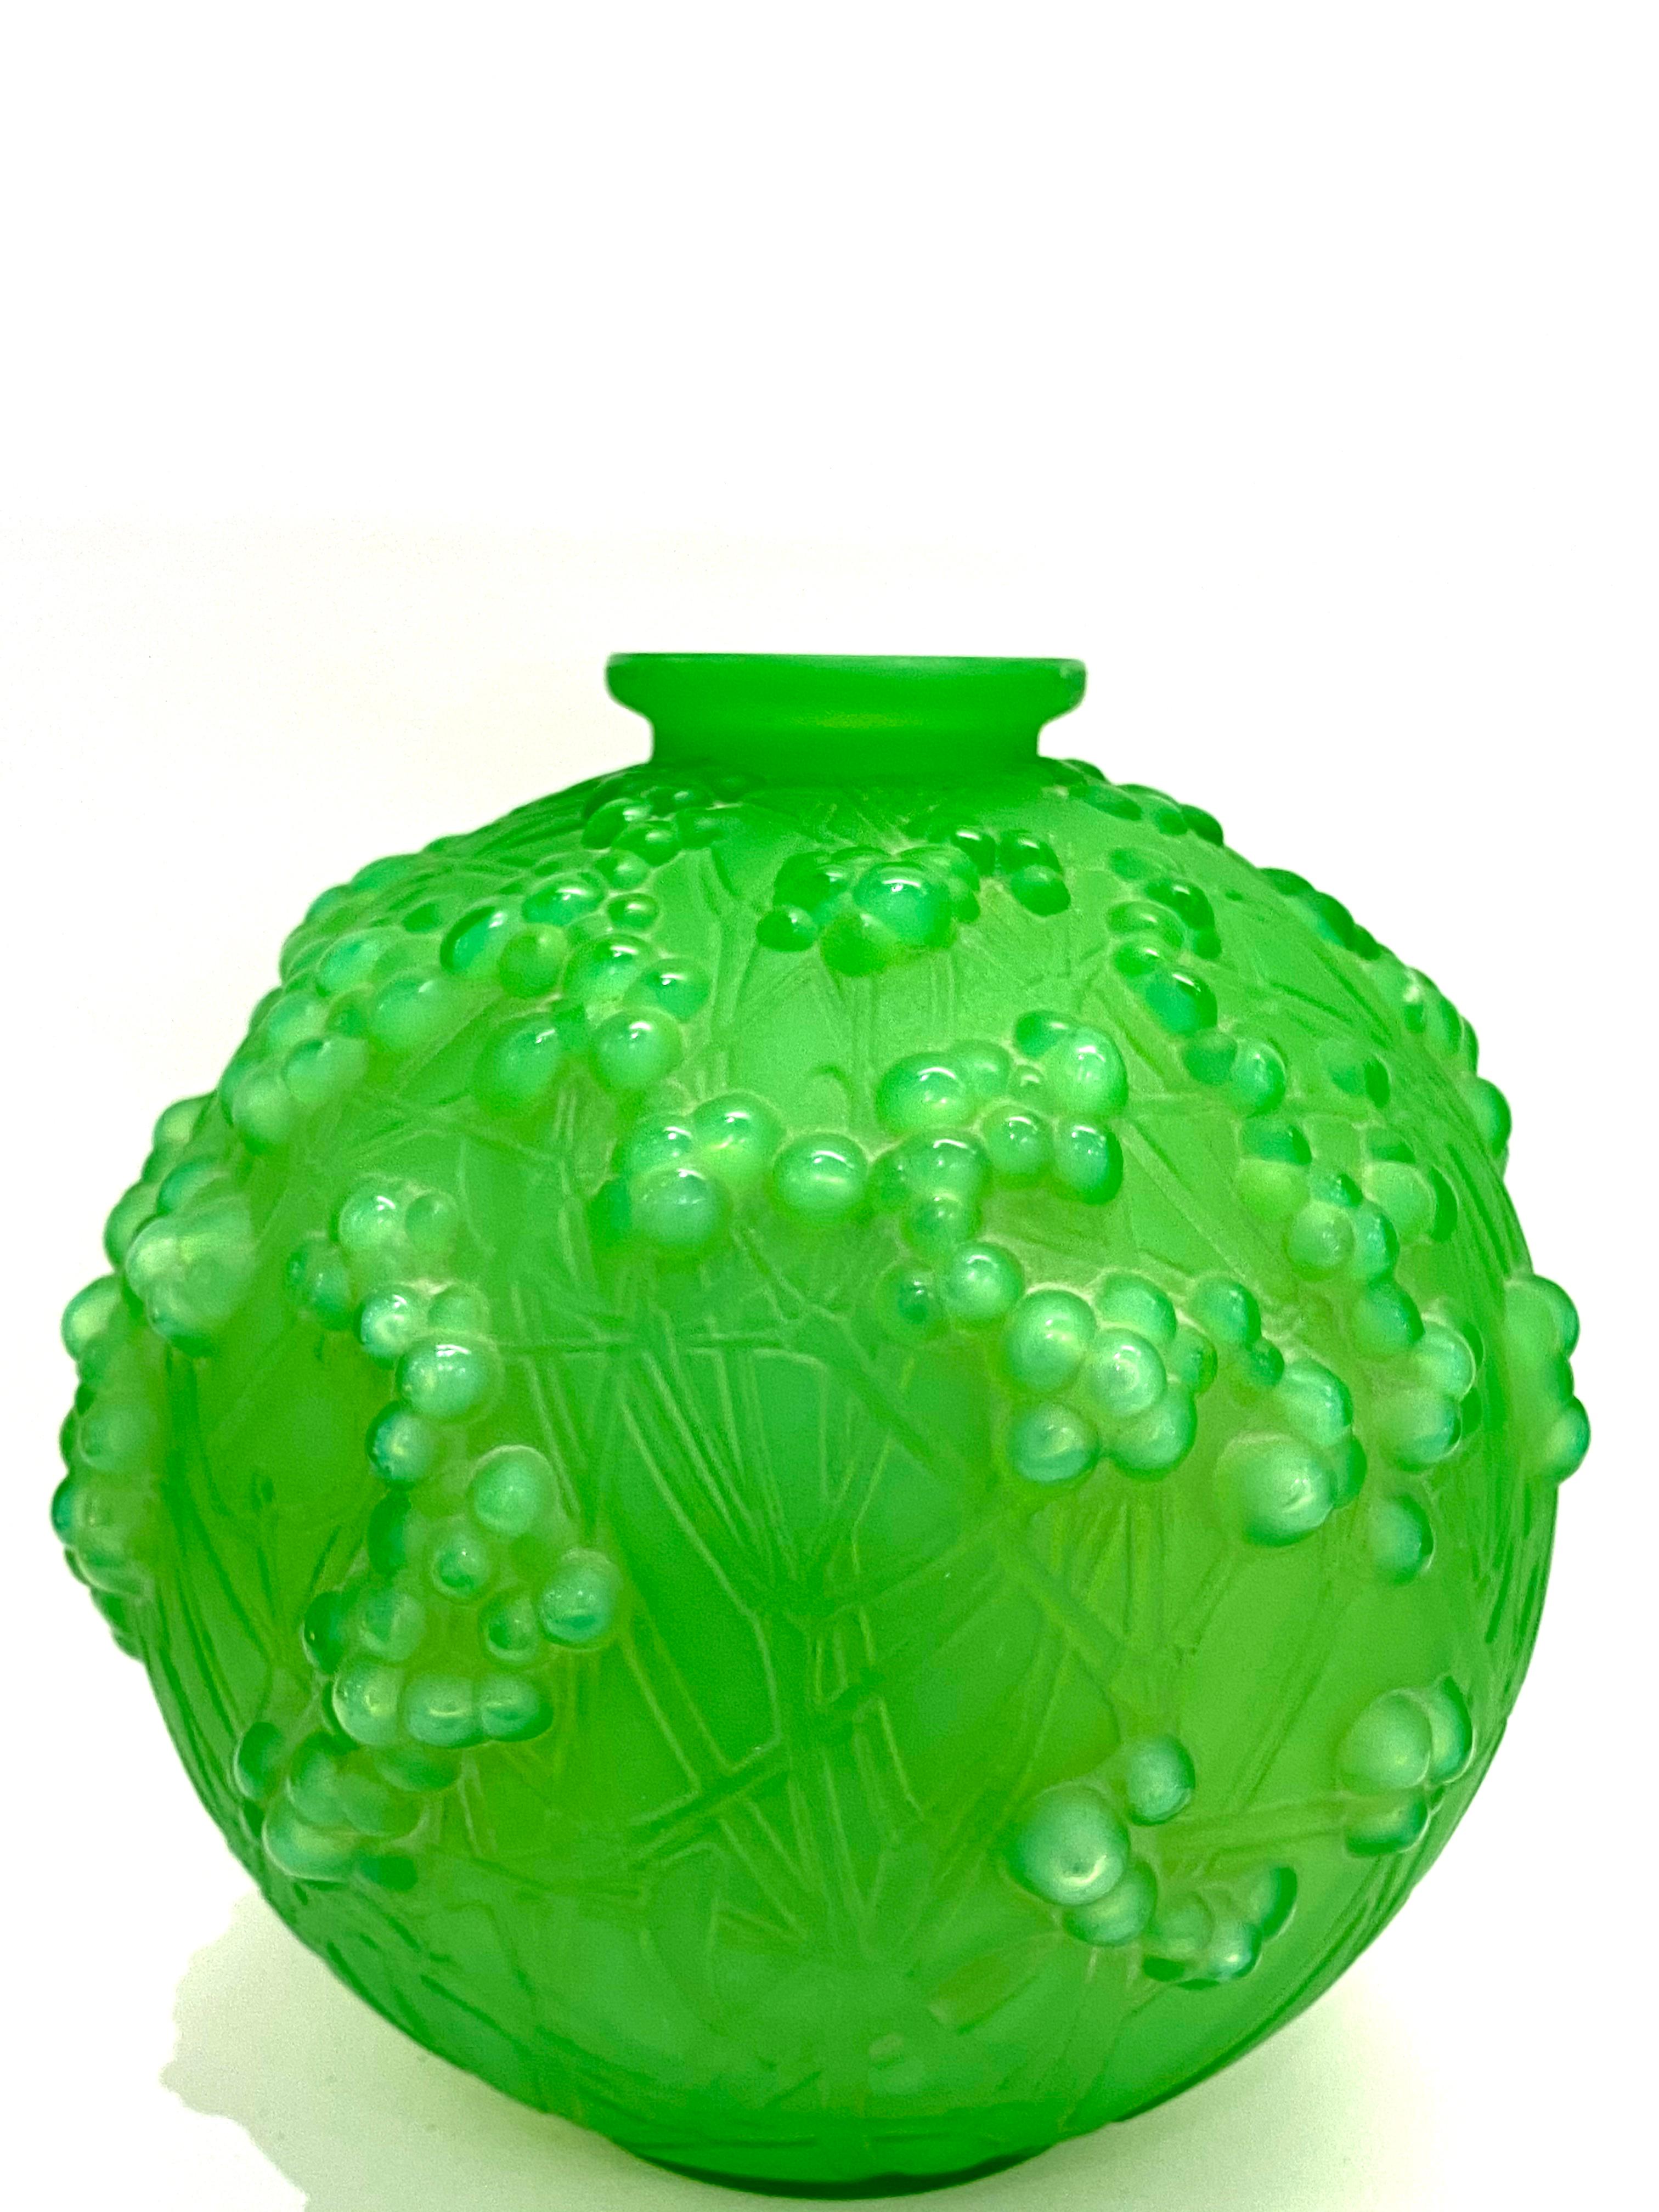 Art Deco 1924 René Lalique Druides Vase in Triple Cased Jade Green Glass Mistletoe